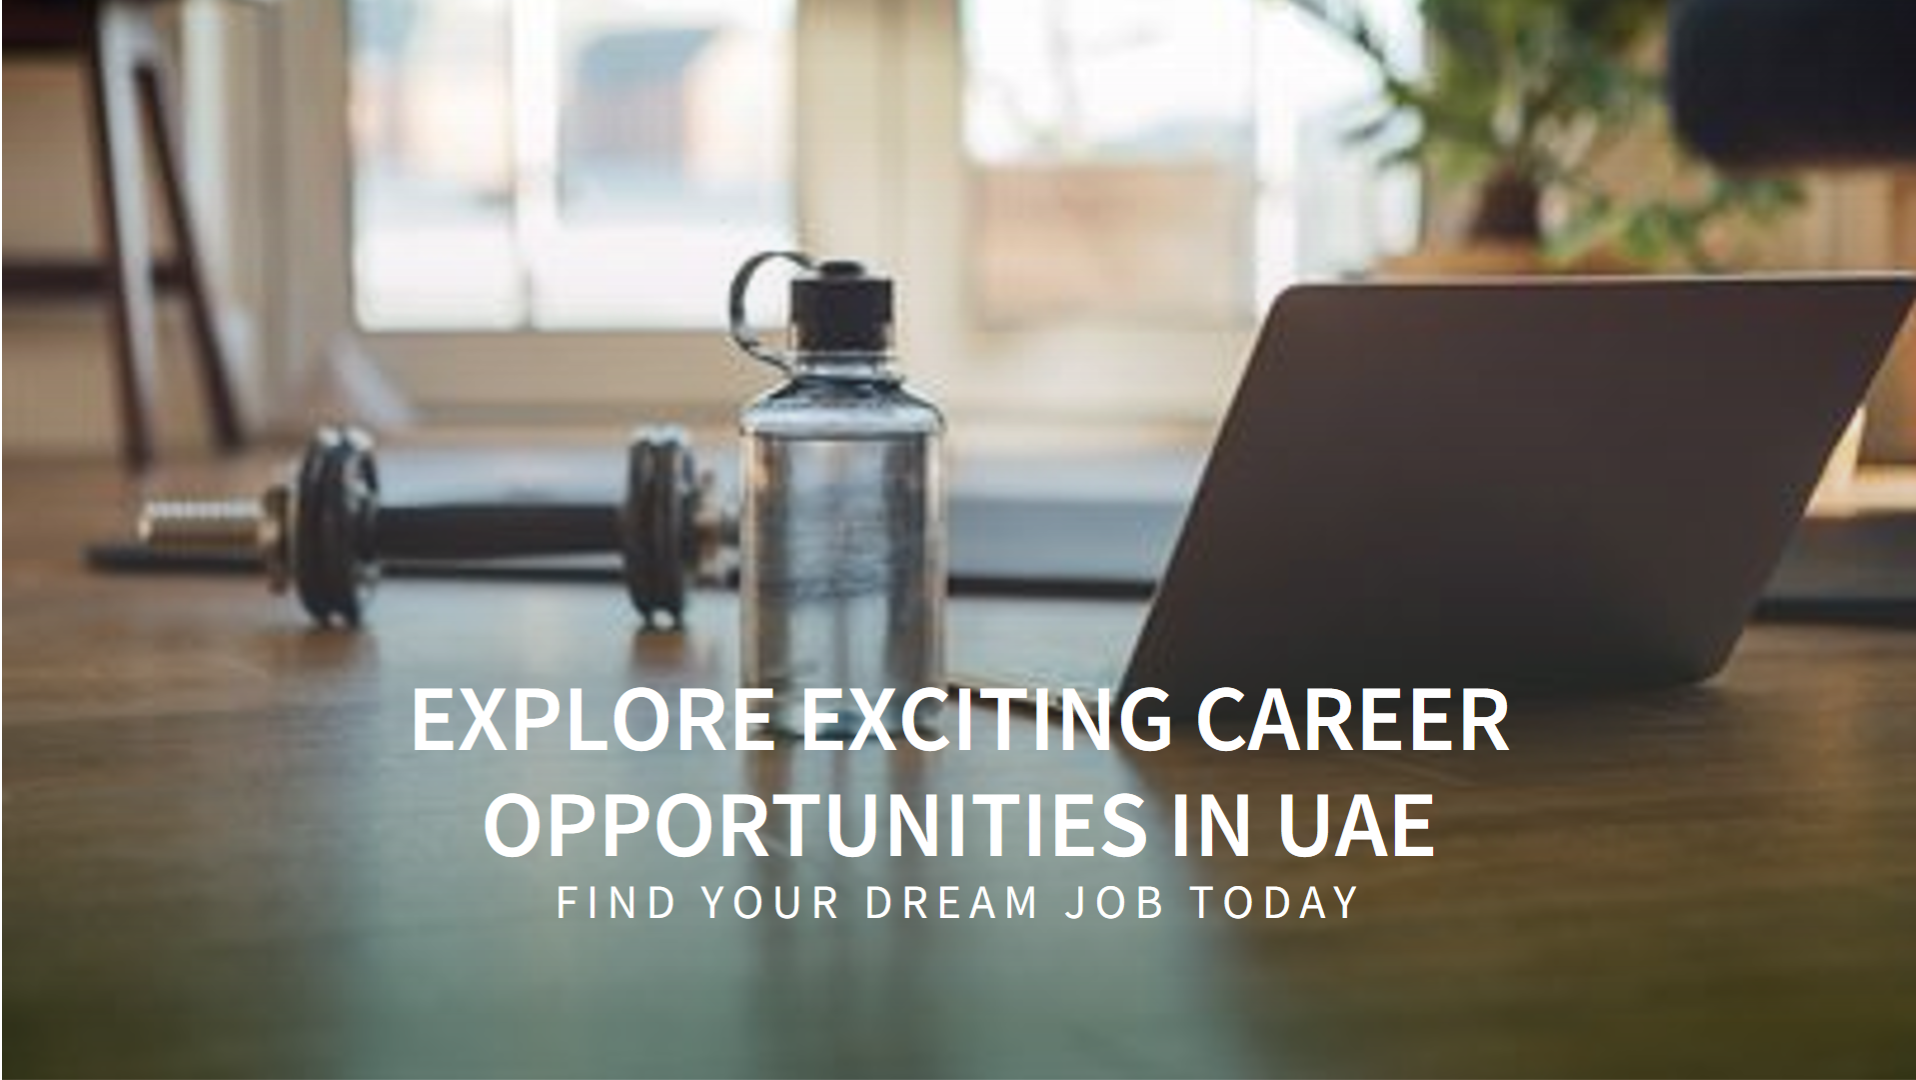 Careers in UAE